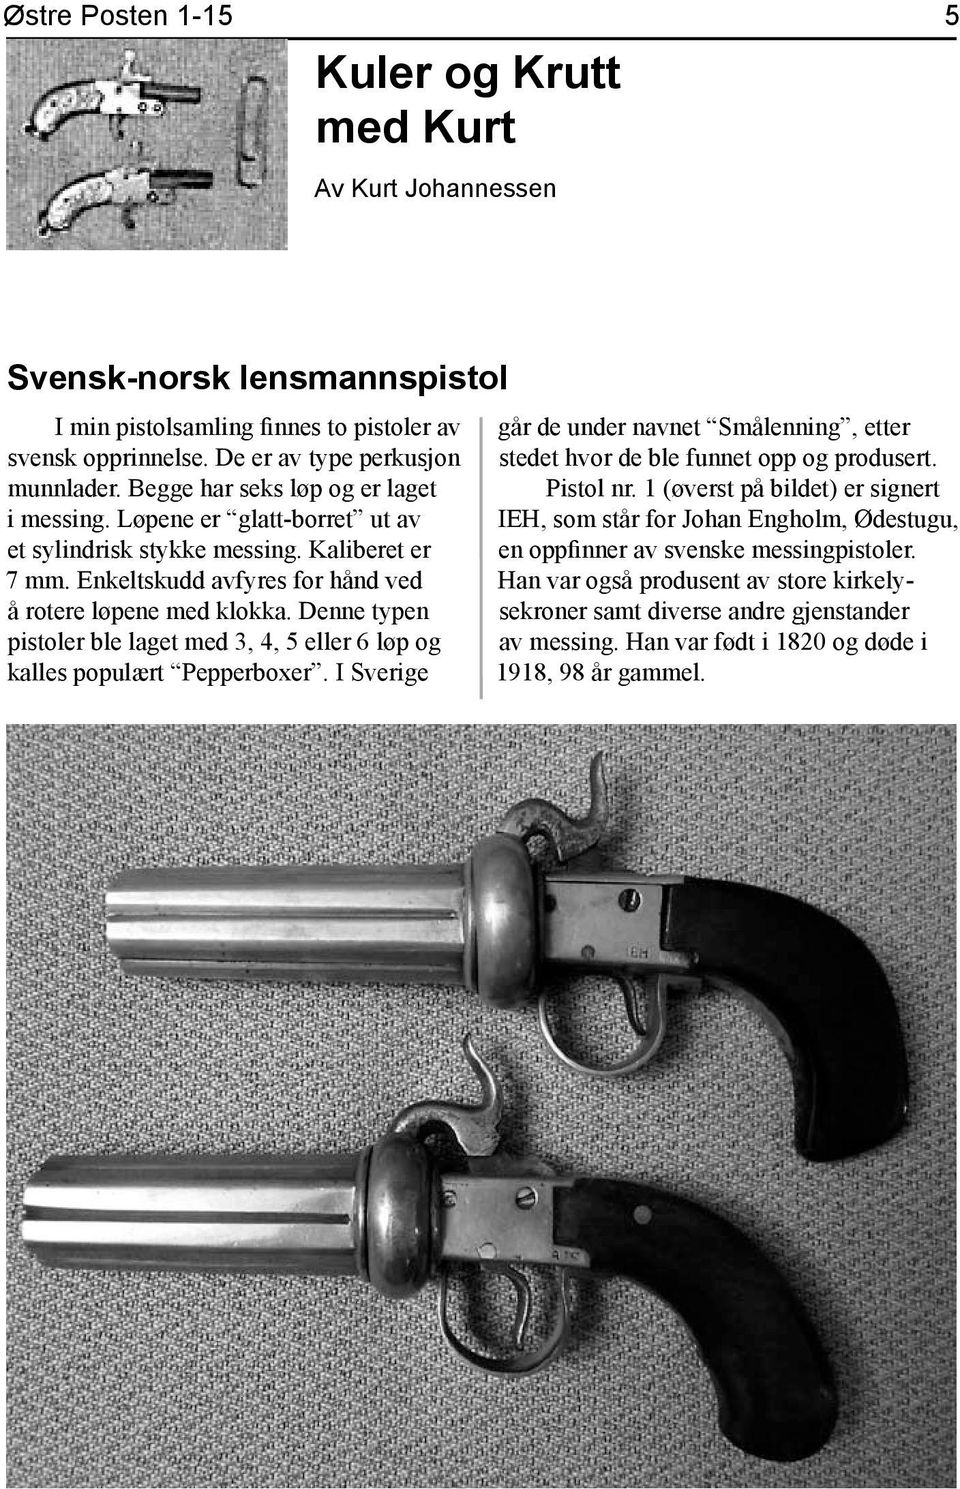 Denne typen pistoler ble laget med 3, 4, 5 eller 6 løp og kalles populært Pepperboxer. I Sverige går de under navnet Smålenning, etter stedet hvor de ble funnet opp og produsert. Pistol nr.